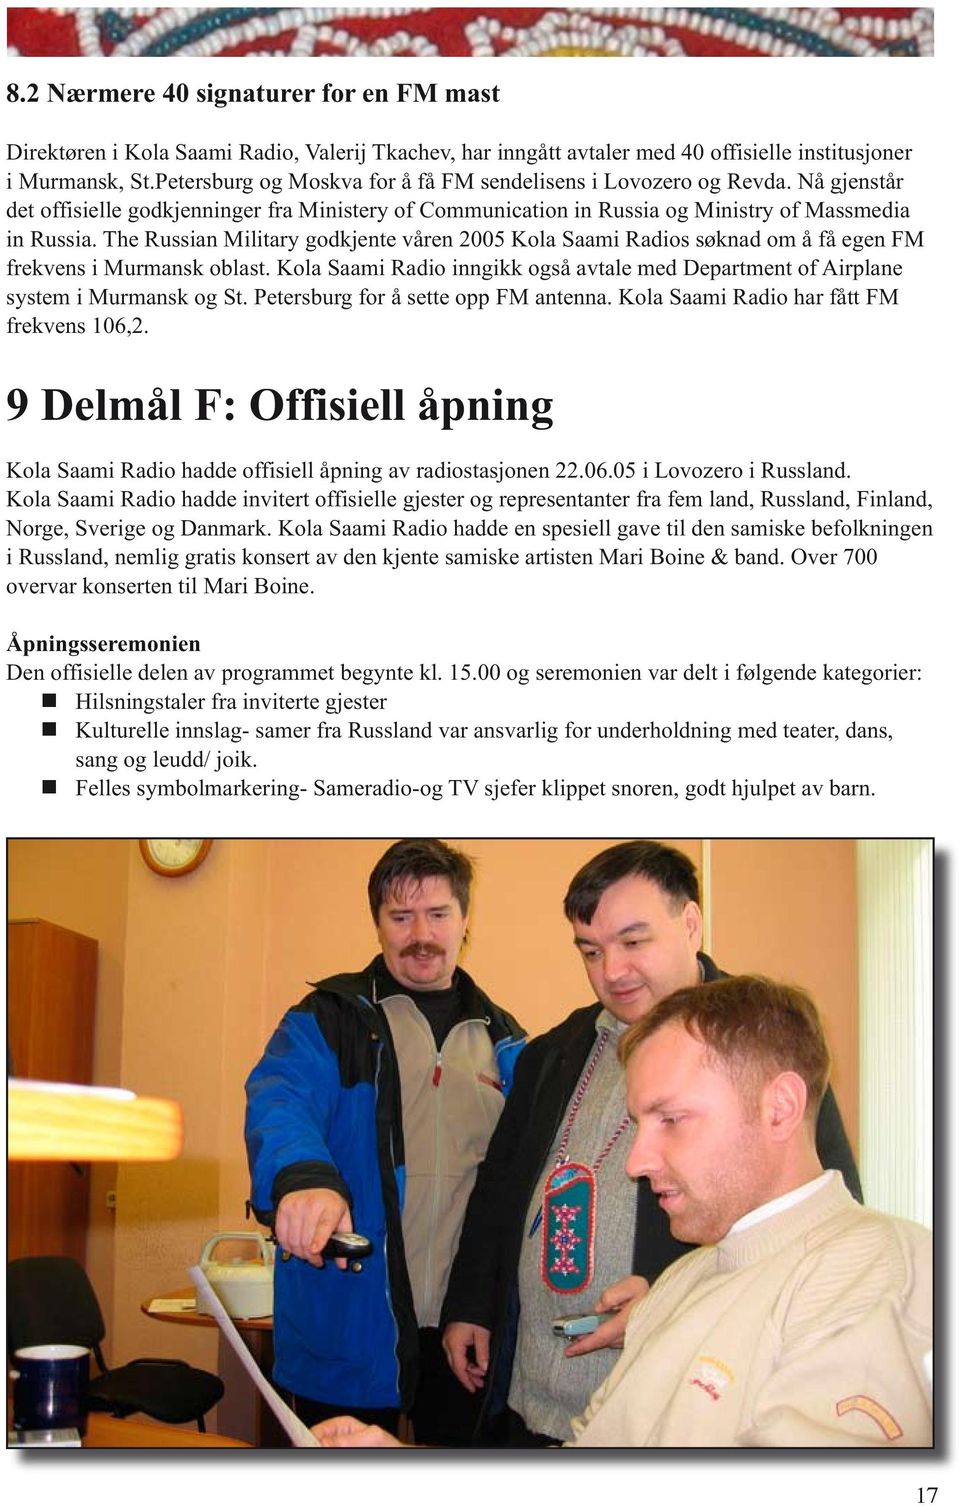 The Russian Military godkjente våren 2005 Kola Saami Radios søknad om å få egen FM frekvens i Murmansk oblast. Kola Saami Radio inngikk også avtale med Department of Airplane system i Murmansk og St.